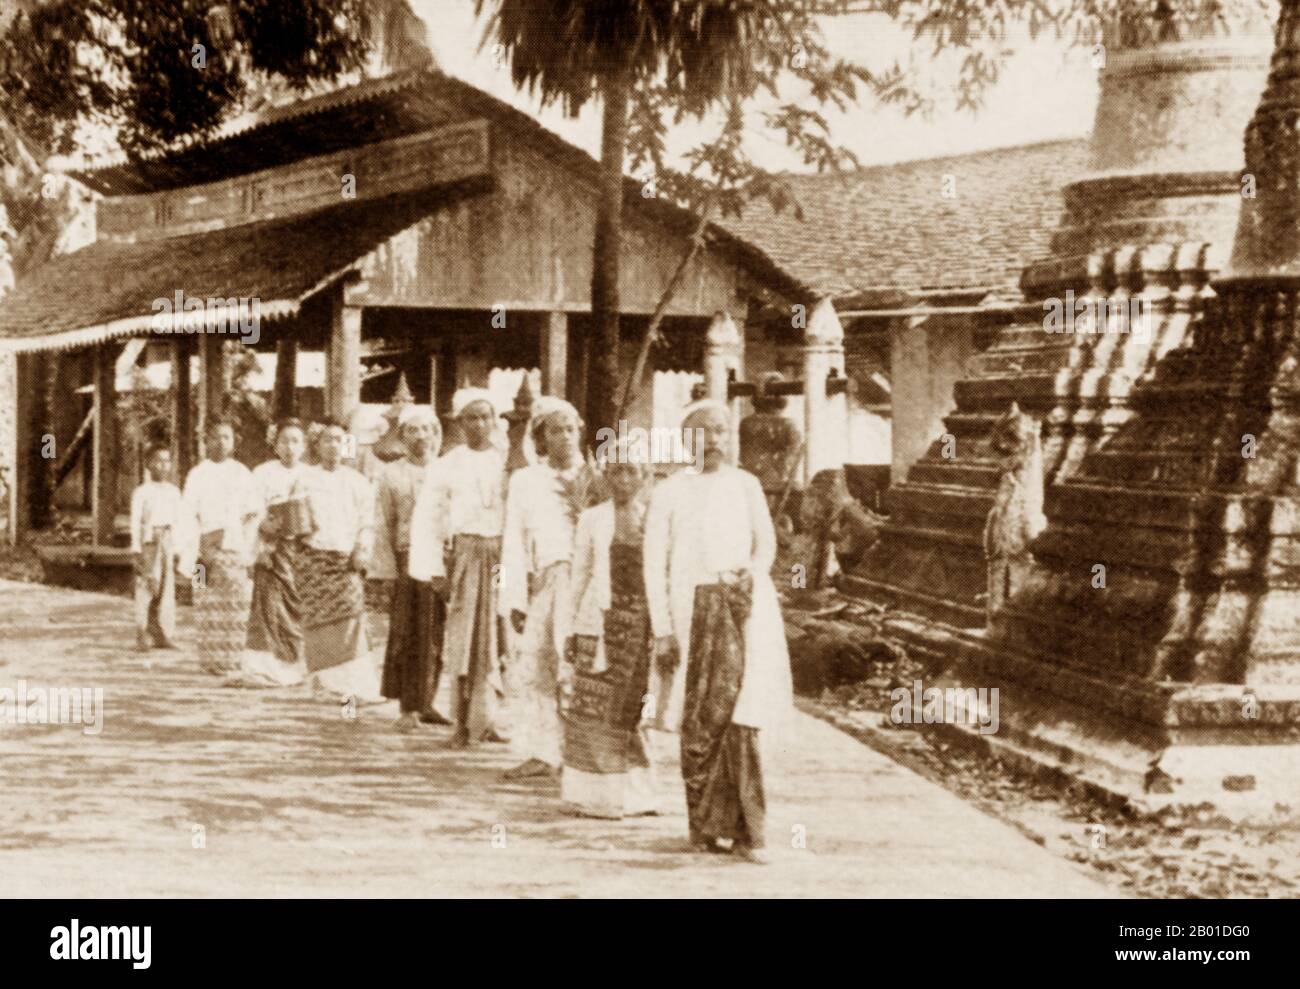 Birmanie : un homme birman de haut rang, suivi de sa famille, quitte un temple bouddhiste, vers 1892-1896. La légende attribue la première doctrine bouddhiste en Birmanie à 228 BCE lorsque Sonna et Uttara, deux ambassadeurs de l'empereur Ashoka le Grand de l'Inde, sont venus au pays avec des textes sacrés. Cependant, l'ère d'or du bouddhisme a vraiment commencé dans le 11th siècle après que le roi Anawrahta de Pagan (Bagan) a été converti au bouddhisme Theravada. Aujourd'hui, 89% de la population birmane est bouddhiste Theravada. Banque D'Images